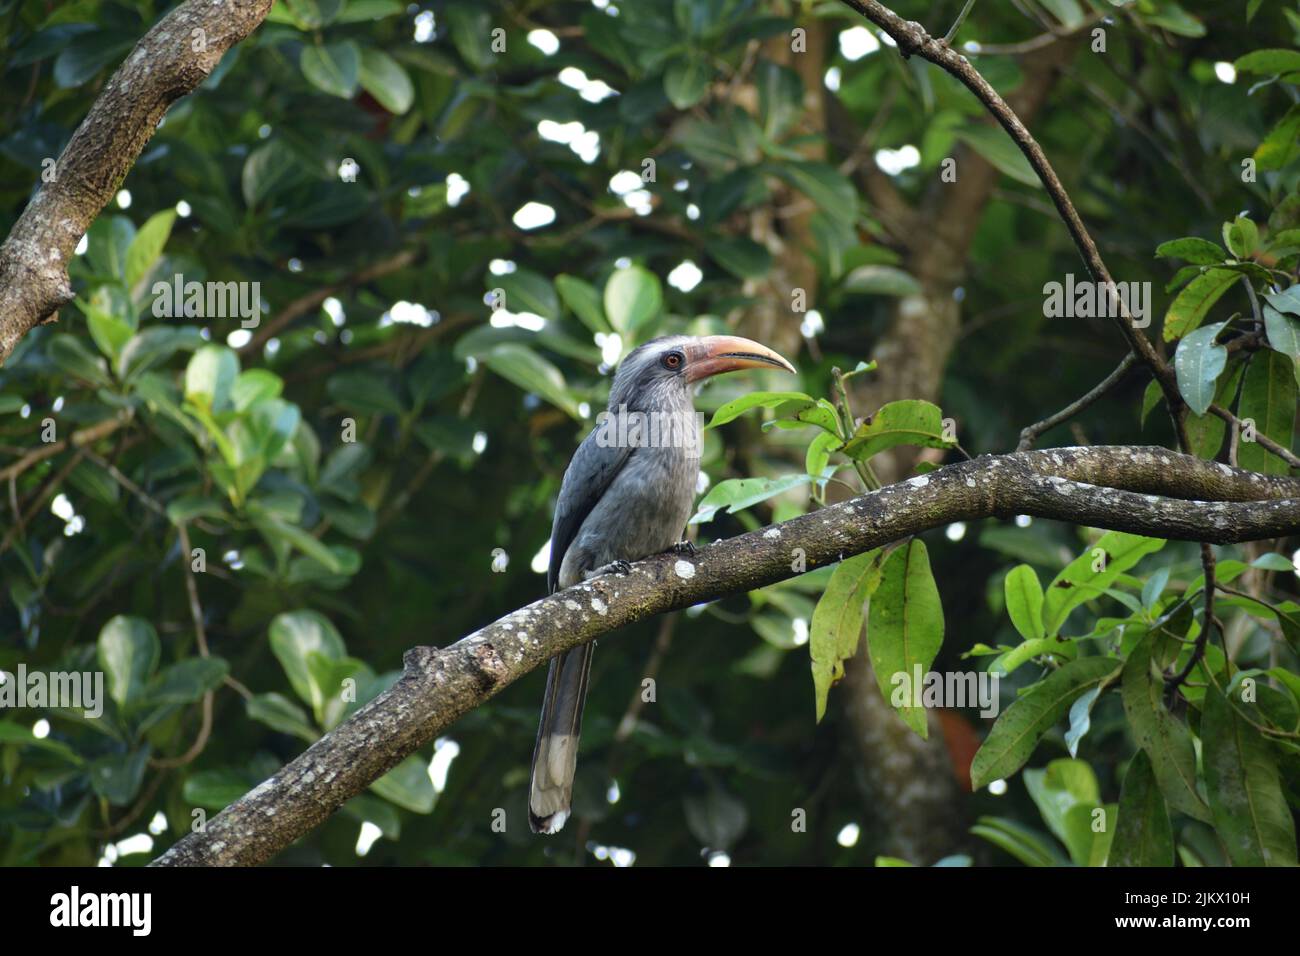 A closeup shot of a hornbill bird perching on a tree branch Stock Photo